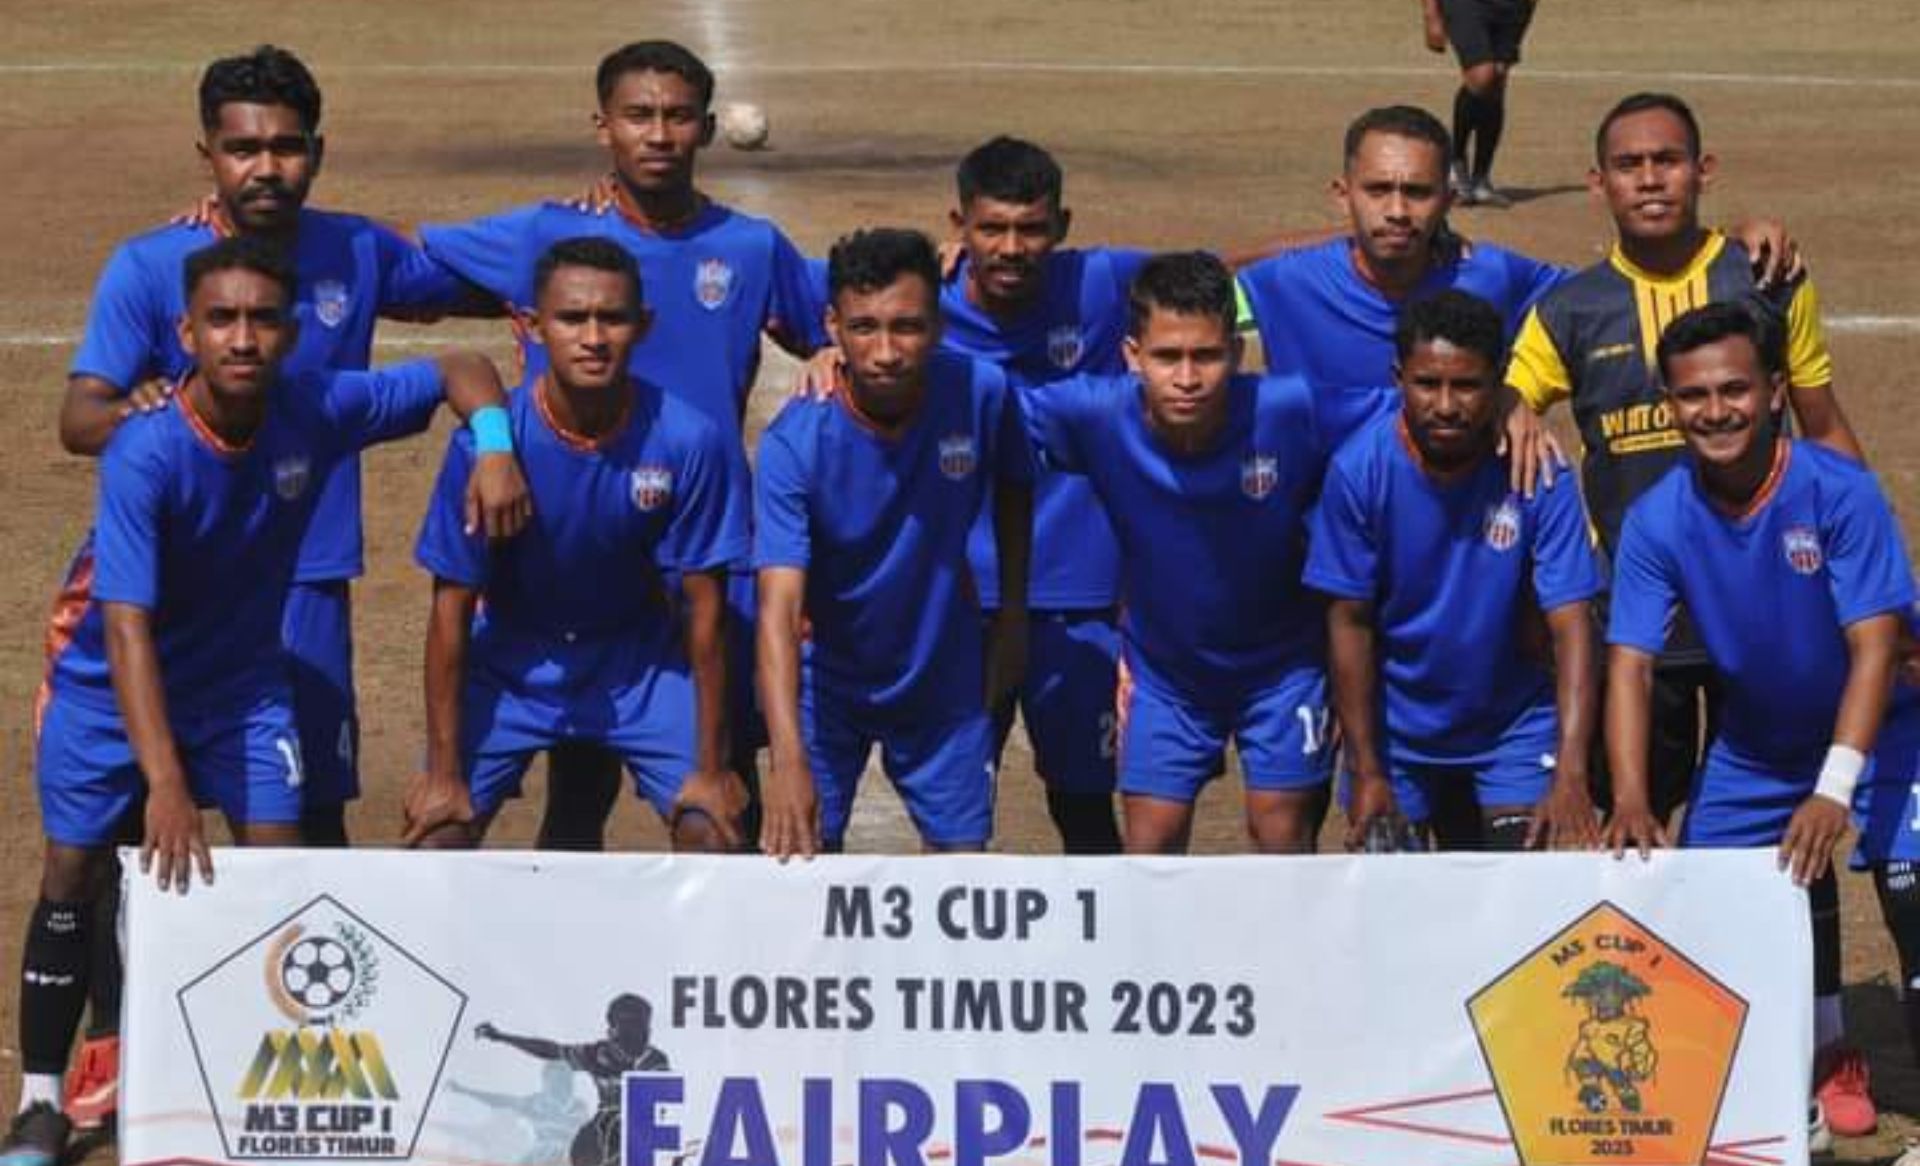 Dewa FC, salah satu klub yang ikut berlaga di turnamen M3 Cup 1 Flotim 2023.//